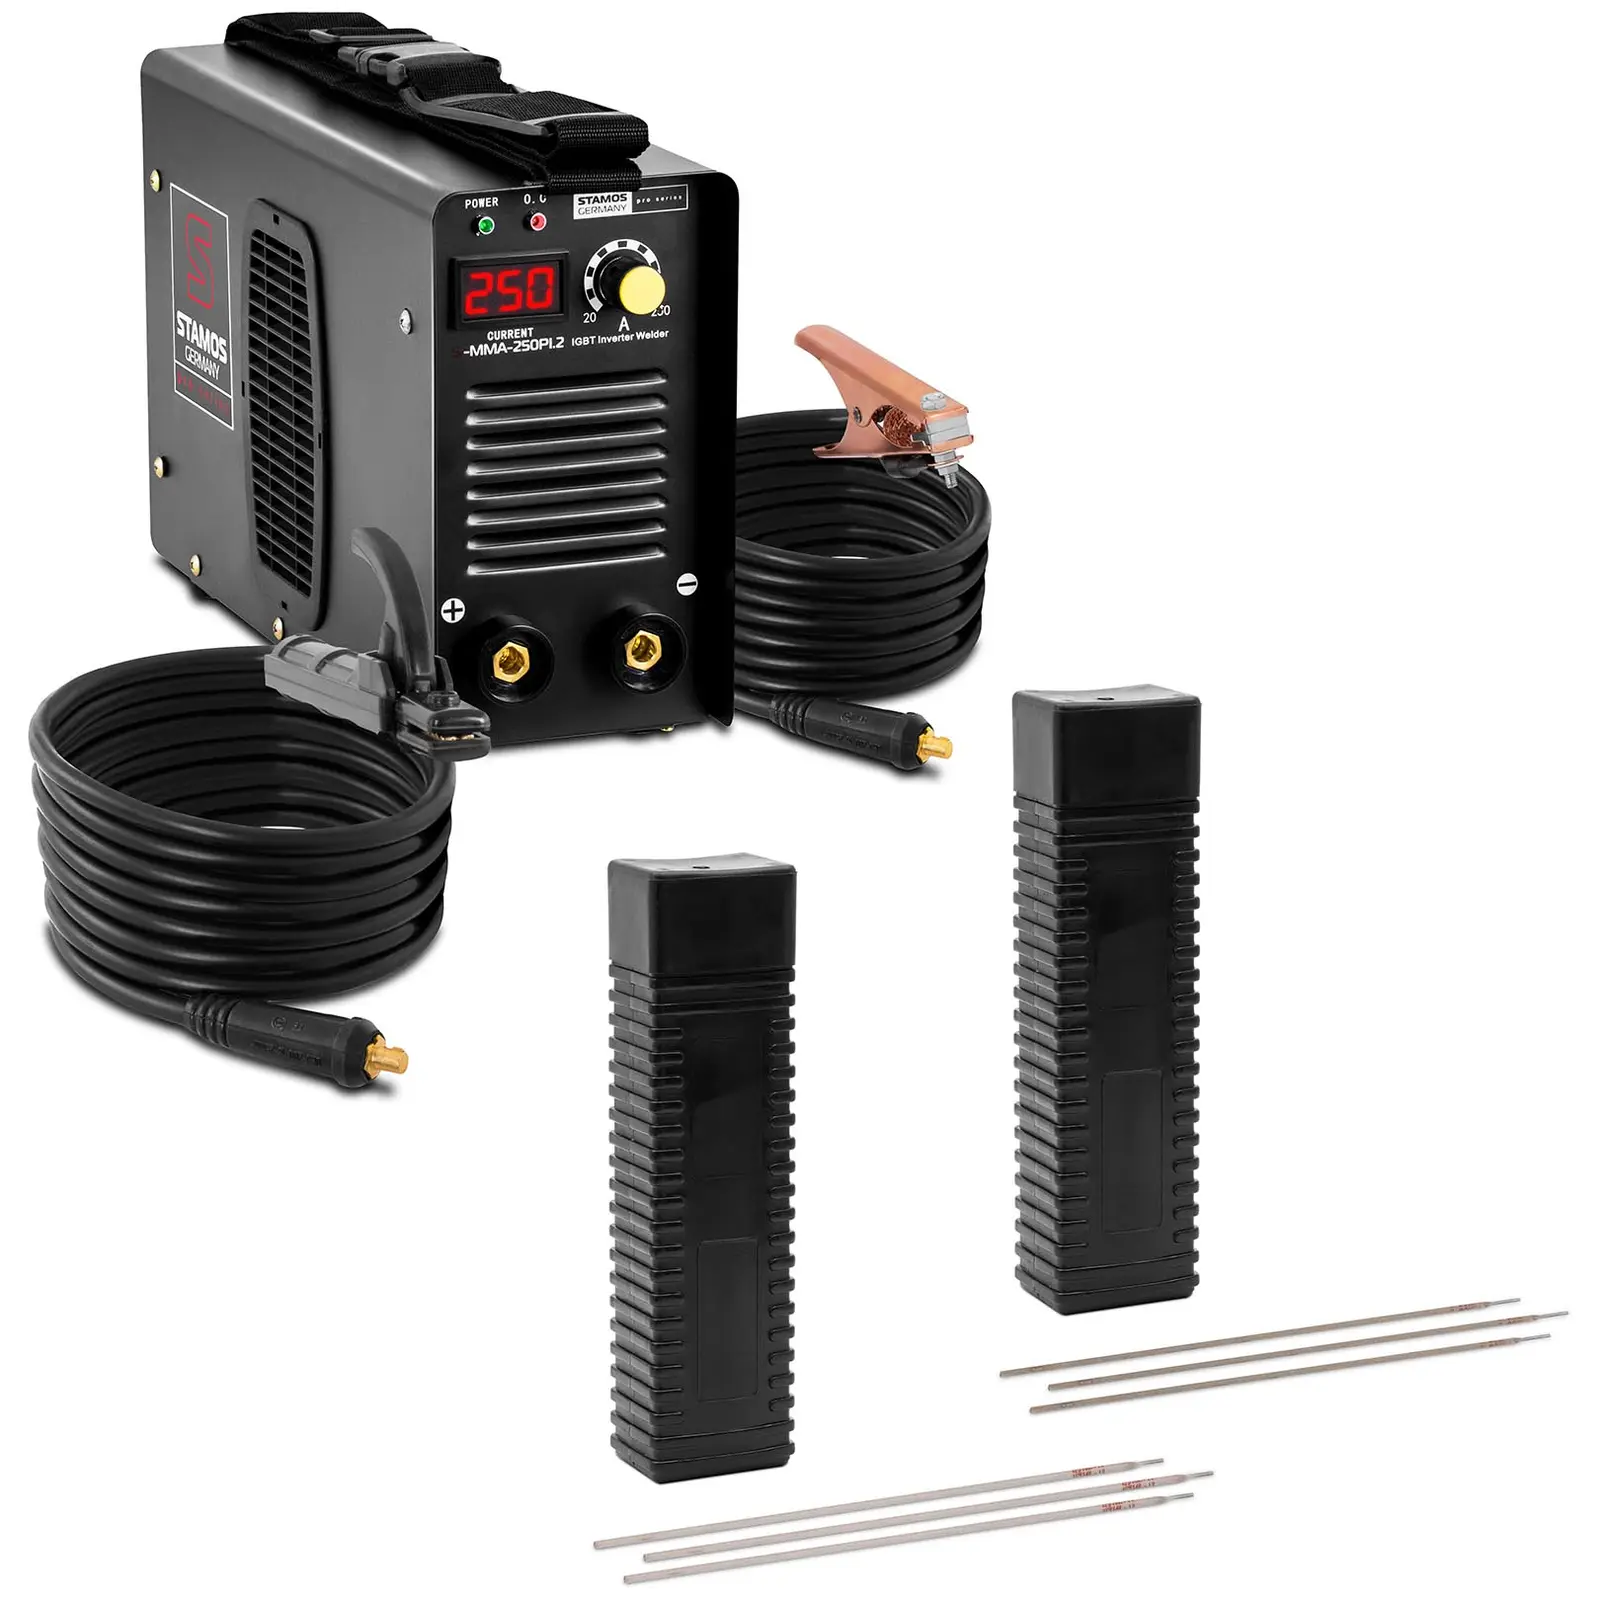 Welding set Electrode welder - 250 A - 8 m cable - 60 % Duty Cycle - Electrodes - E6013 - Ø 2 x 300 mm - 5 kg & E316L-17 - 2,5 x 350 mm - 5 kg